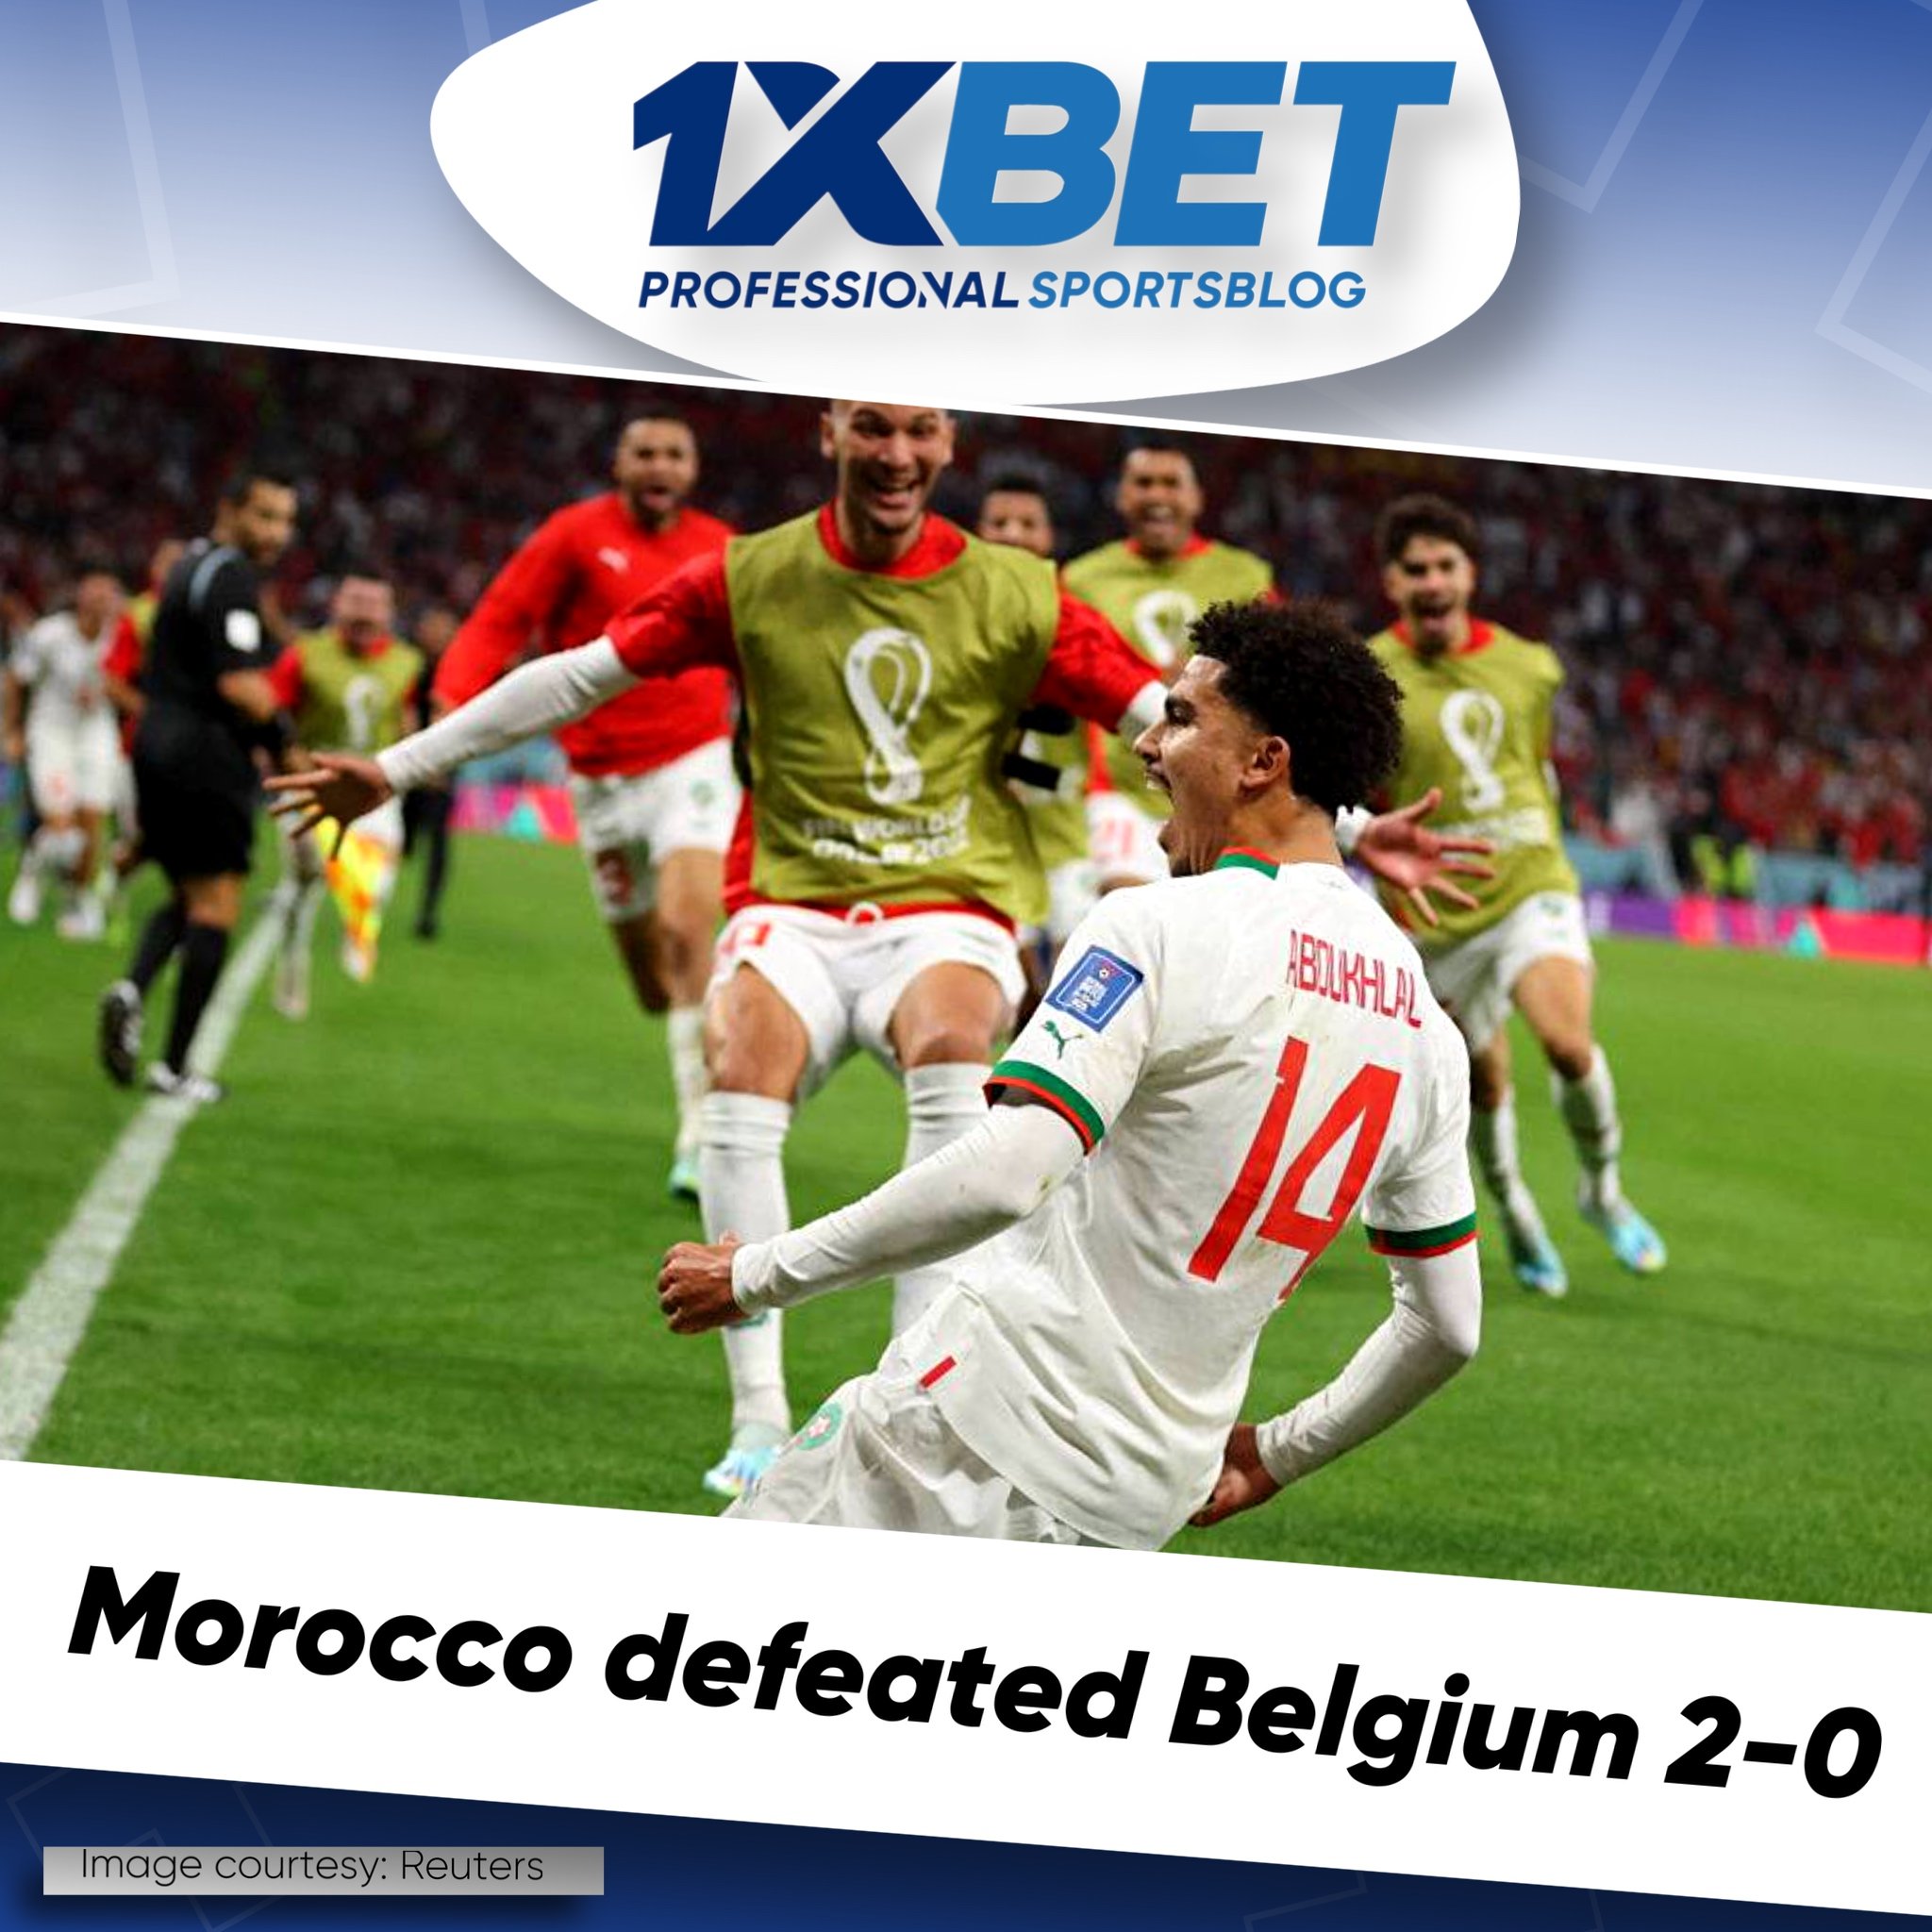 Morocco defeated Belgium 2-0